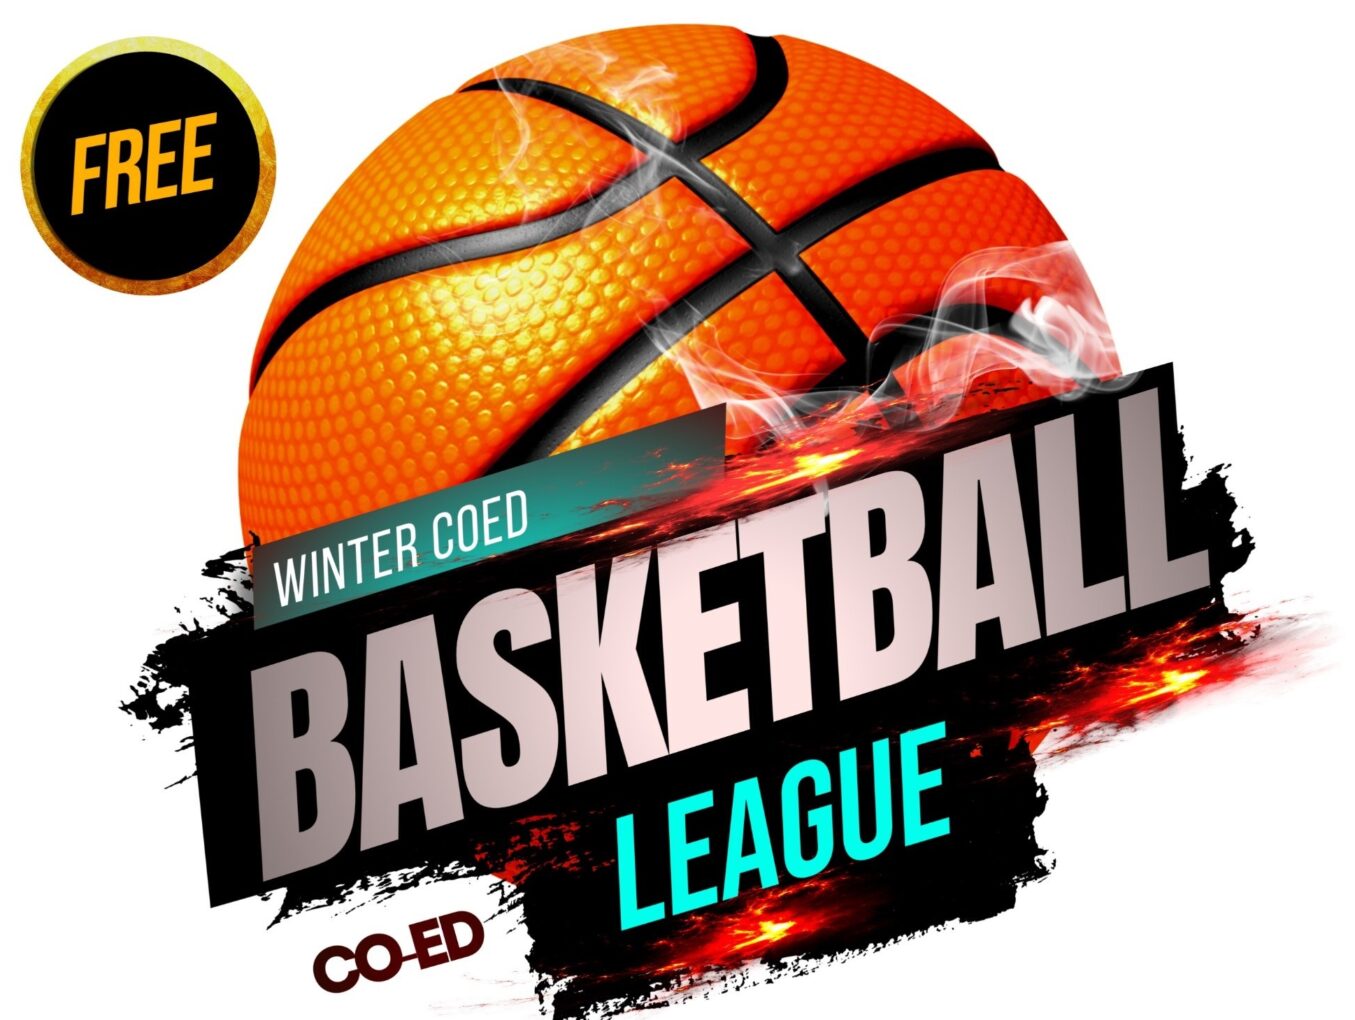 City of Trenton Announces Winter Co-Ed Basketball League